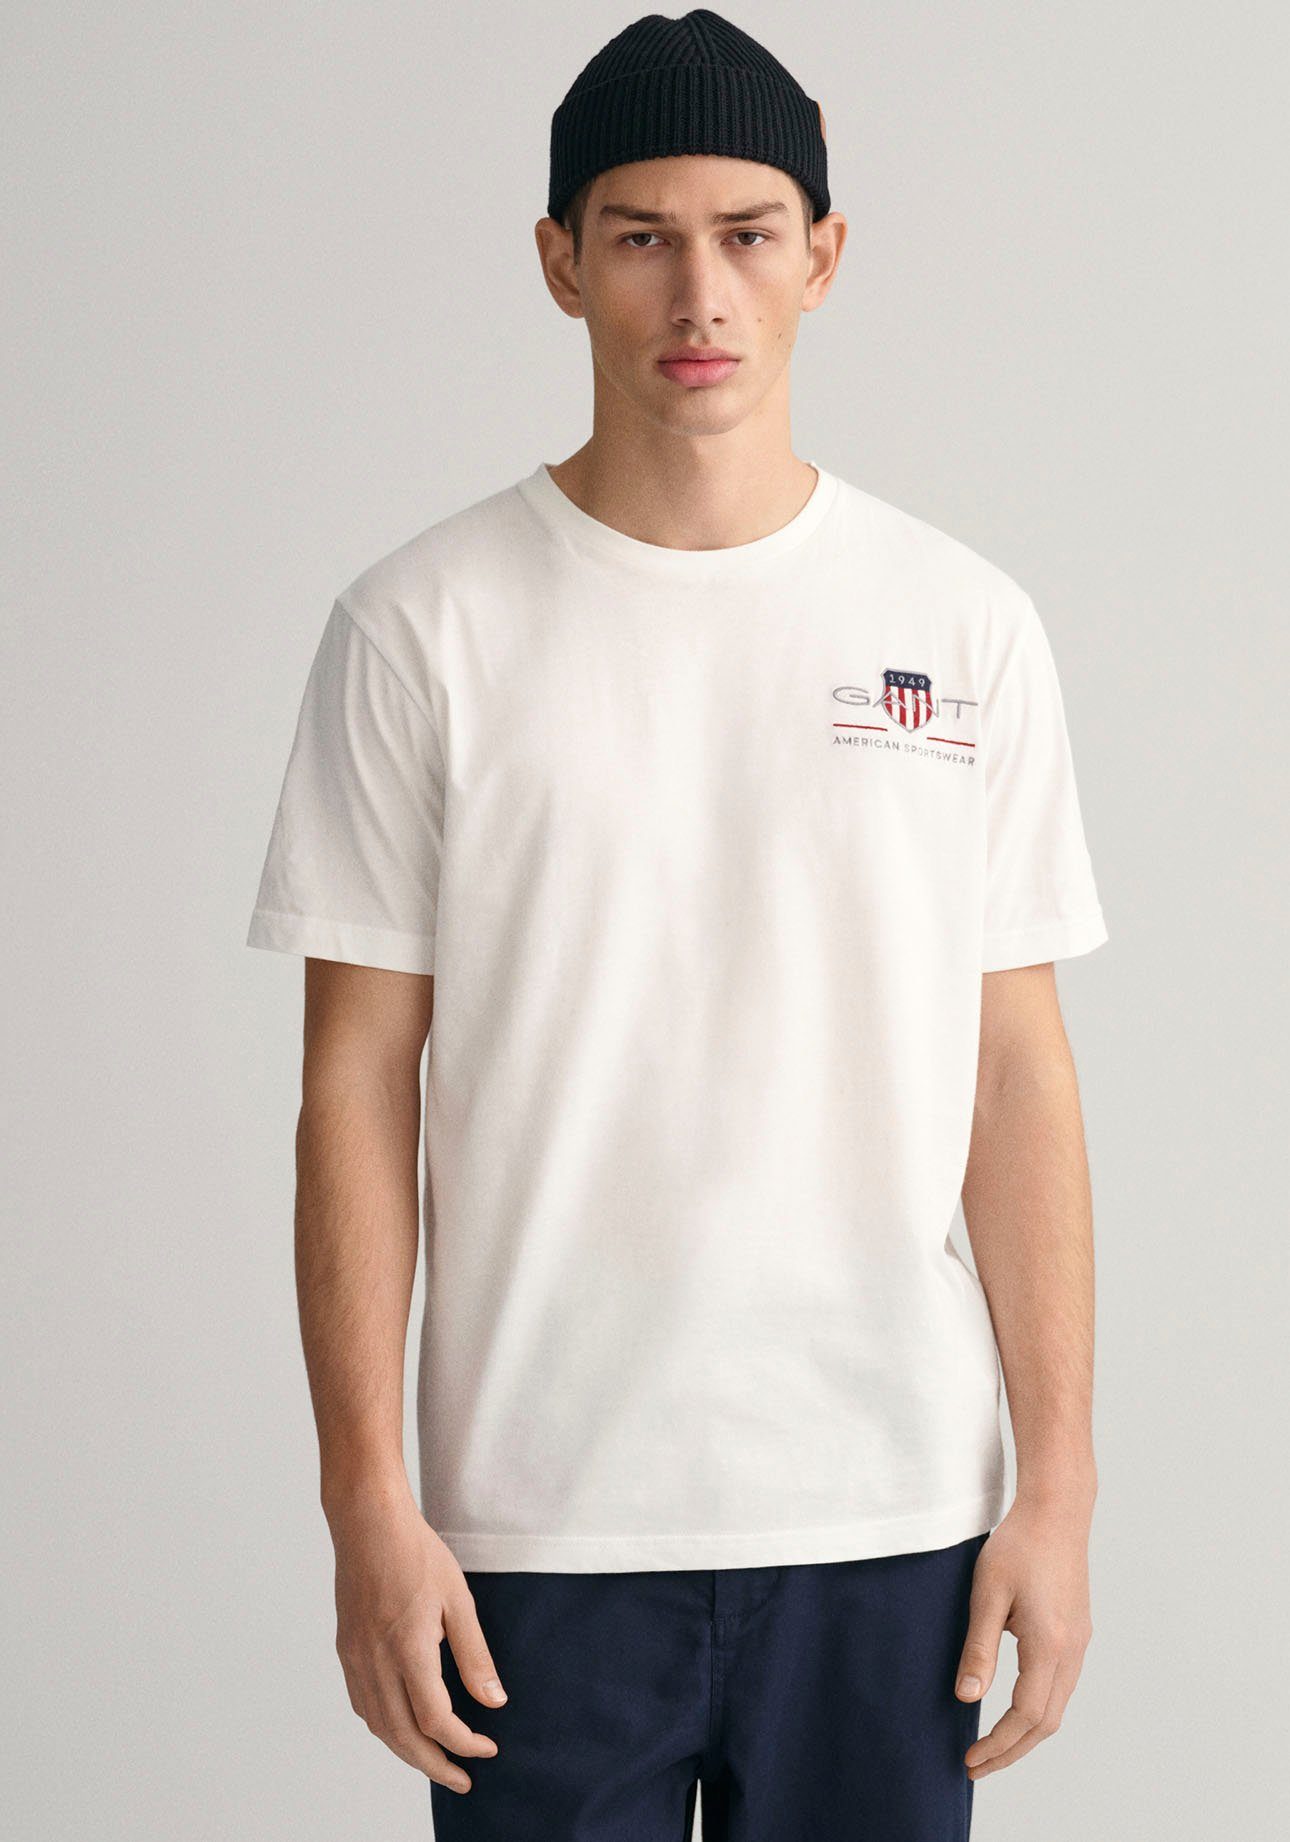 dem ARCHIVE inspiriert den white Gant 1980er-Jahren SHIELD Archiv T-SHIRT REG EMB aus SS T-Shirt von